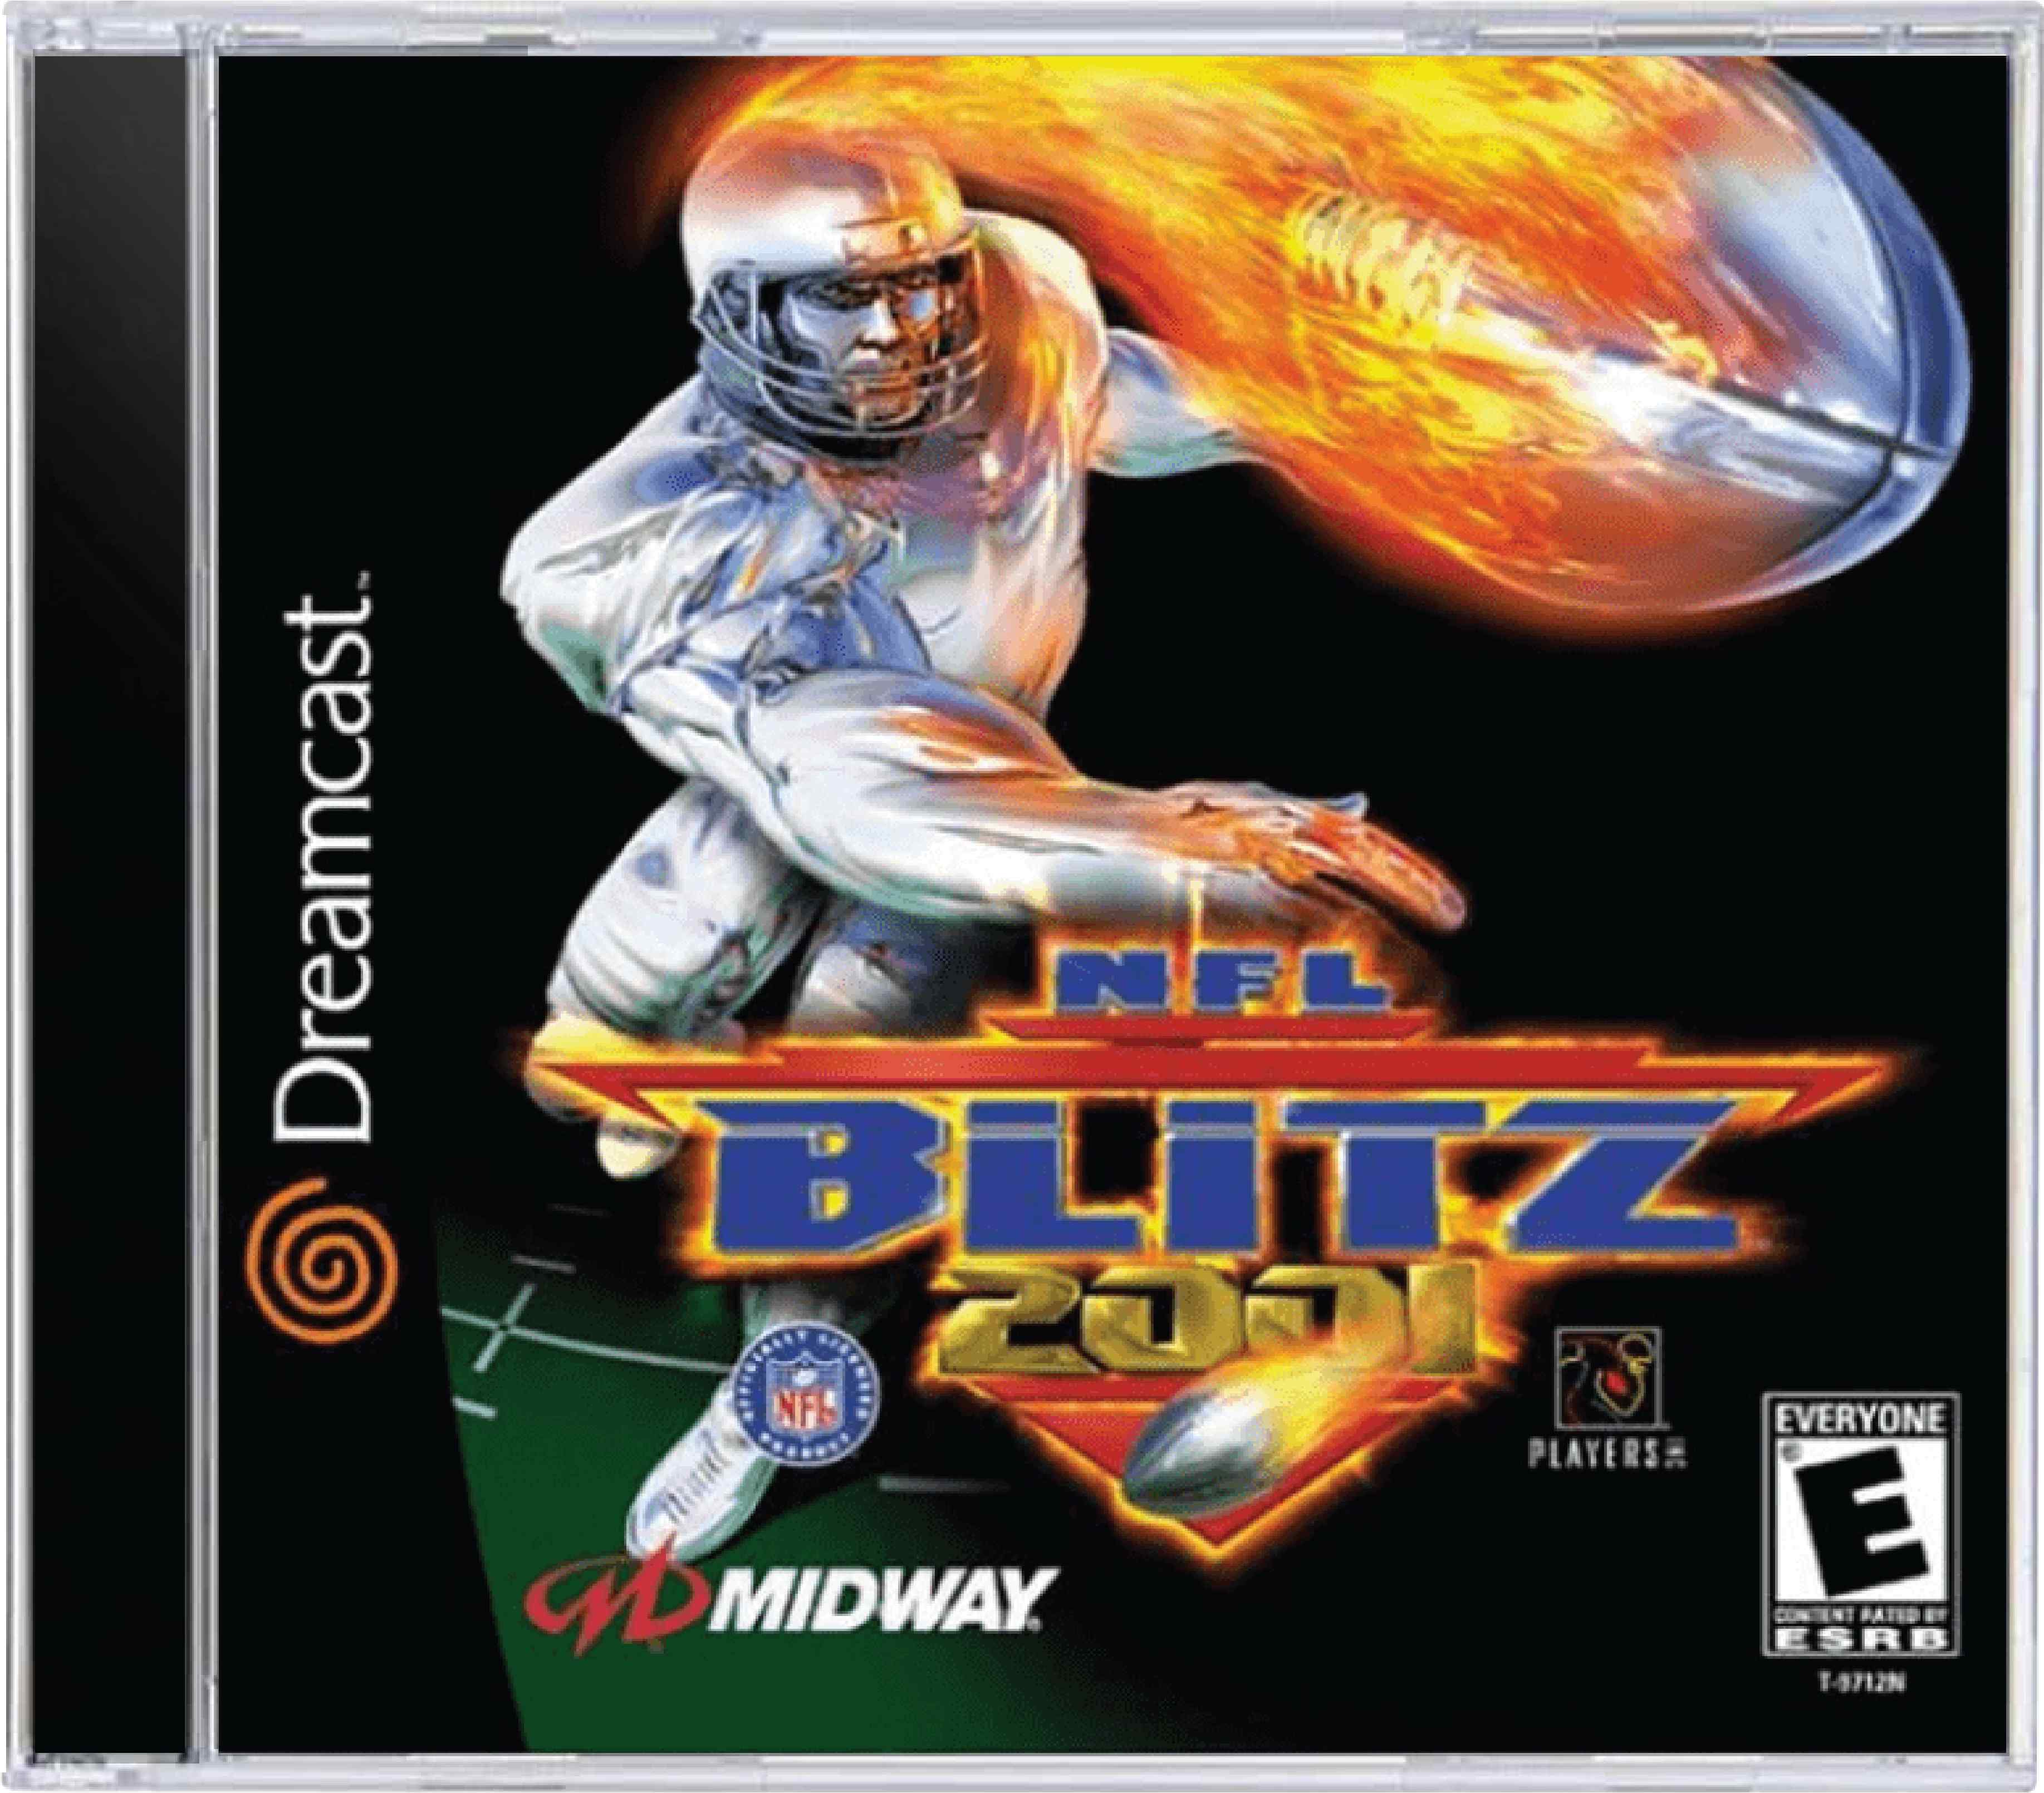 NFL Blitz 2001 Cover Art